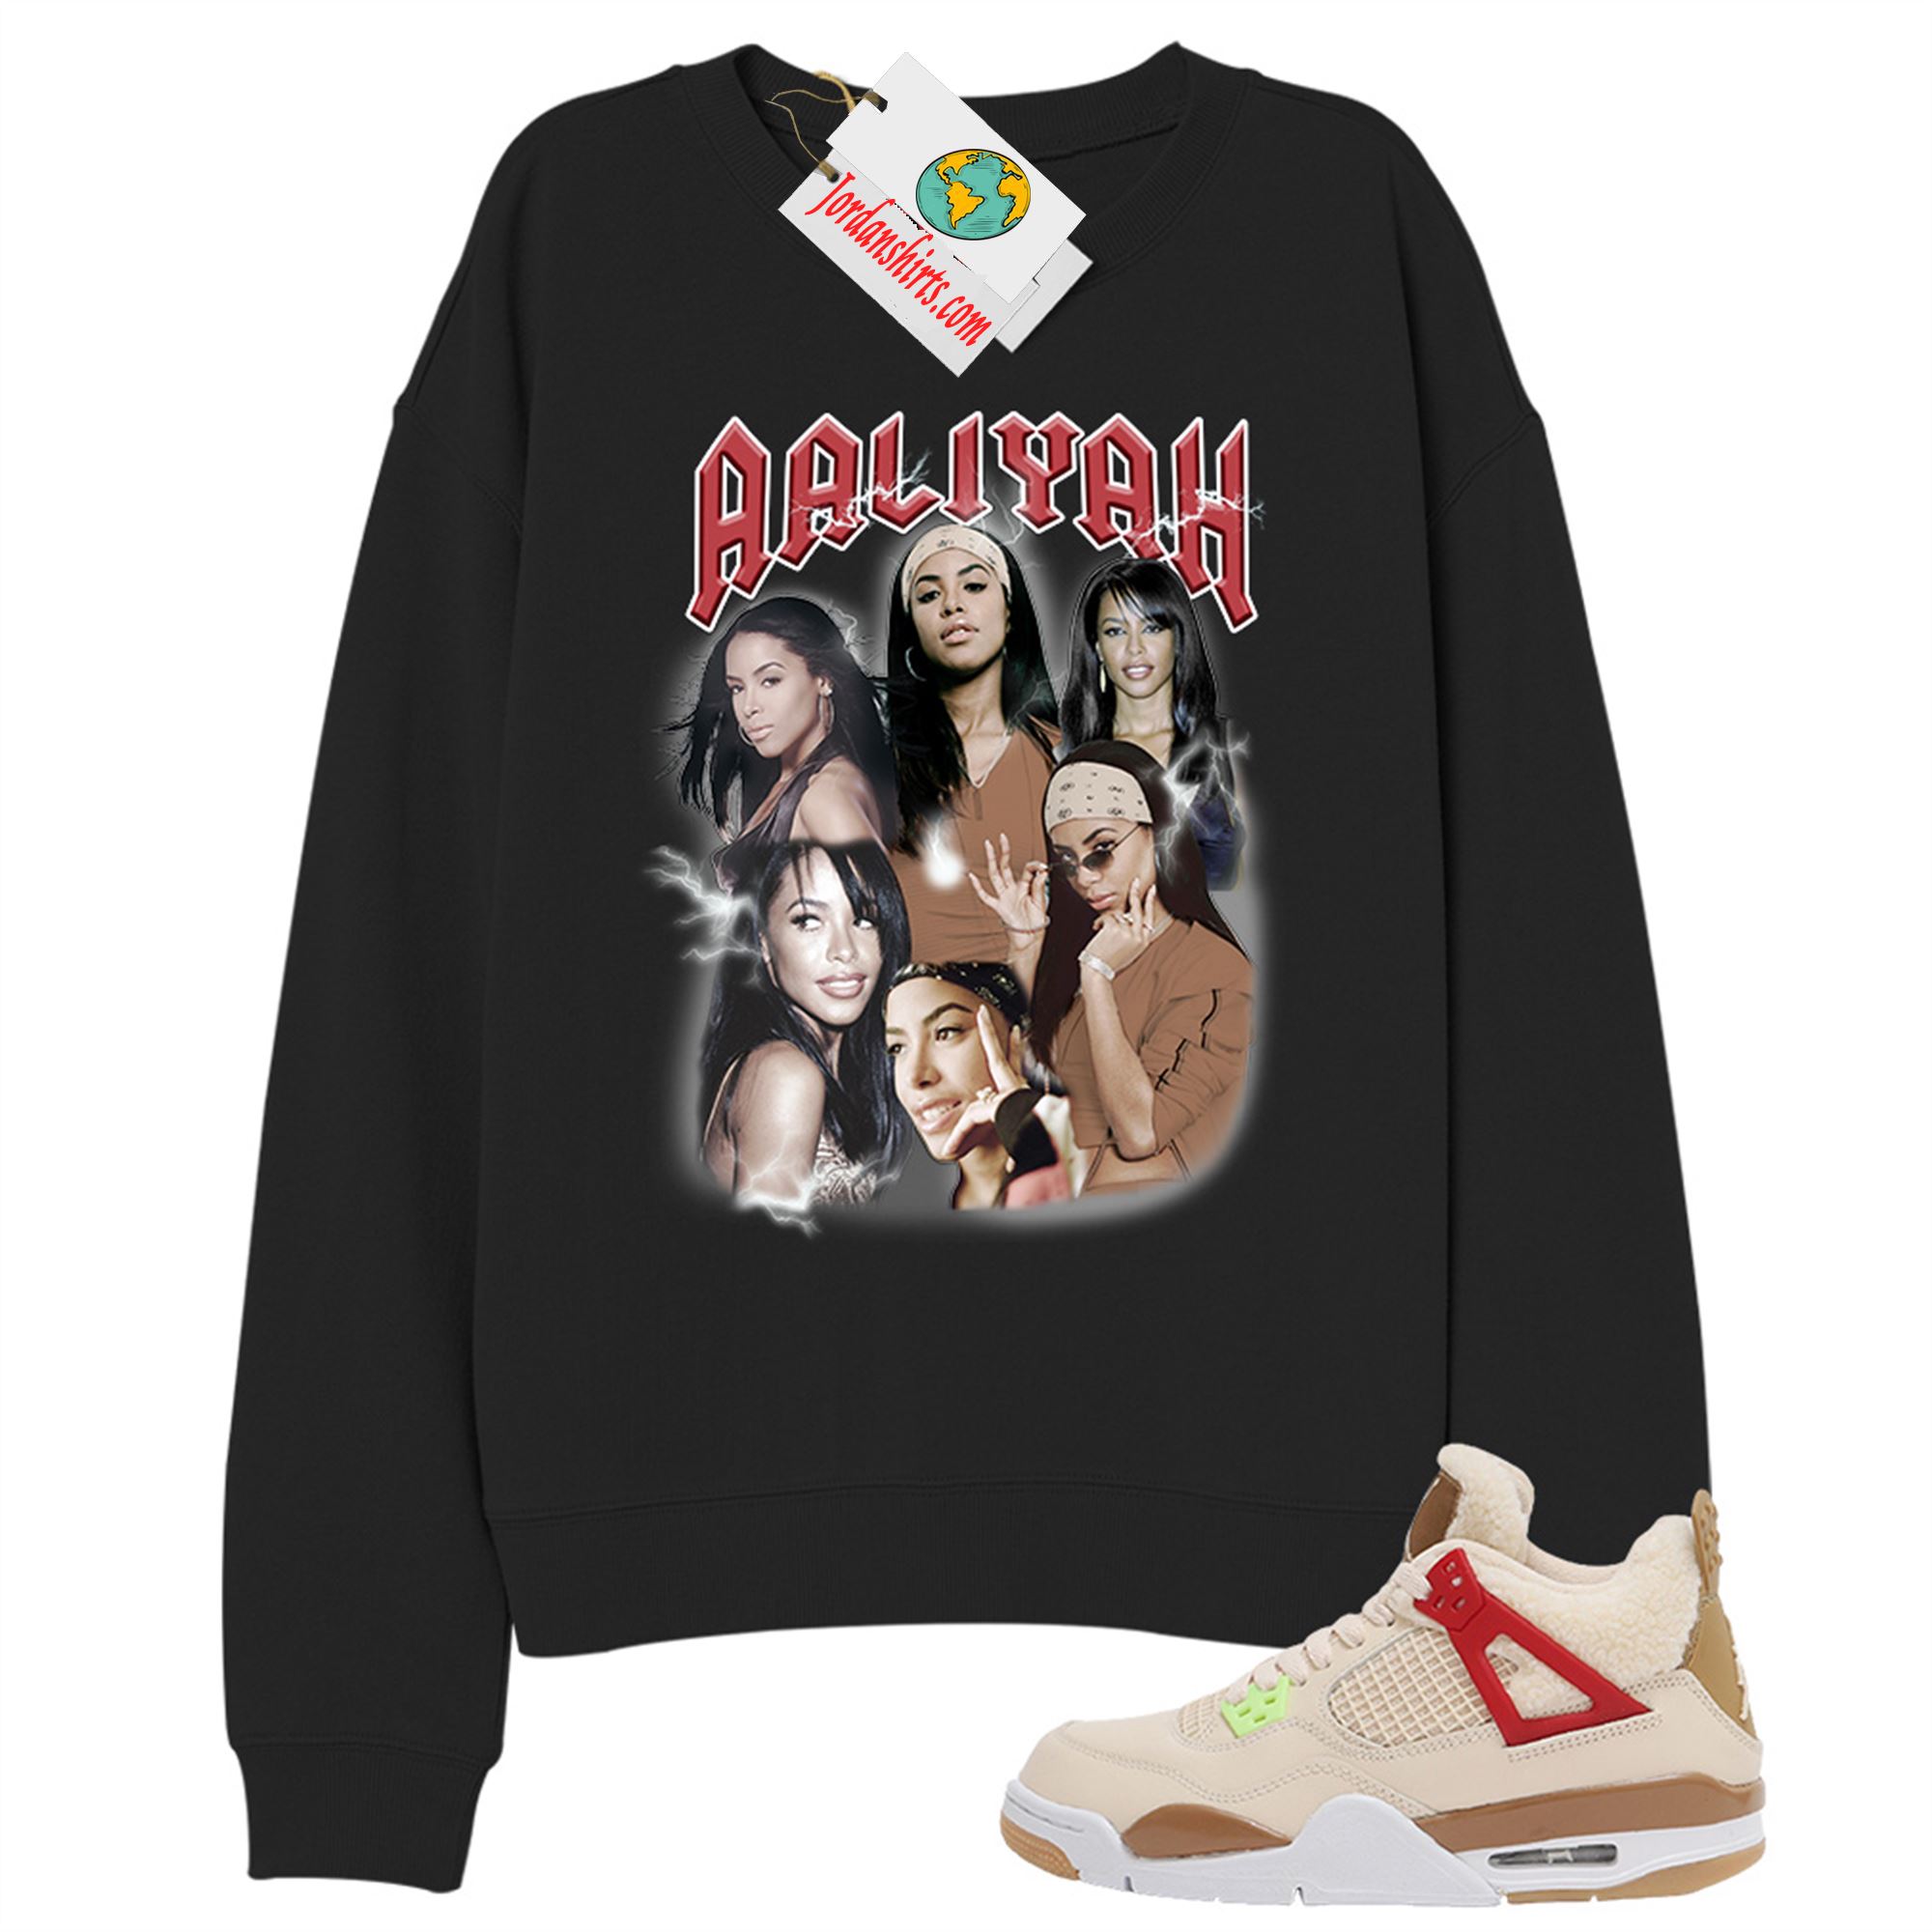 Jordan 4 Sweatshirt, Aaliyah Vintage Black Sweatshirt Air Jordan 4 Wild Thing 4s Plus Size Up To 5xl